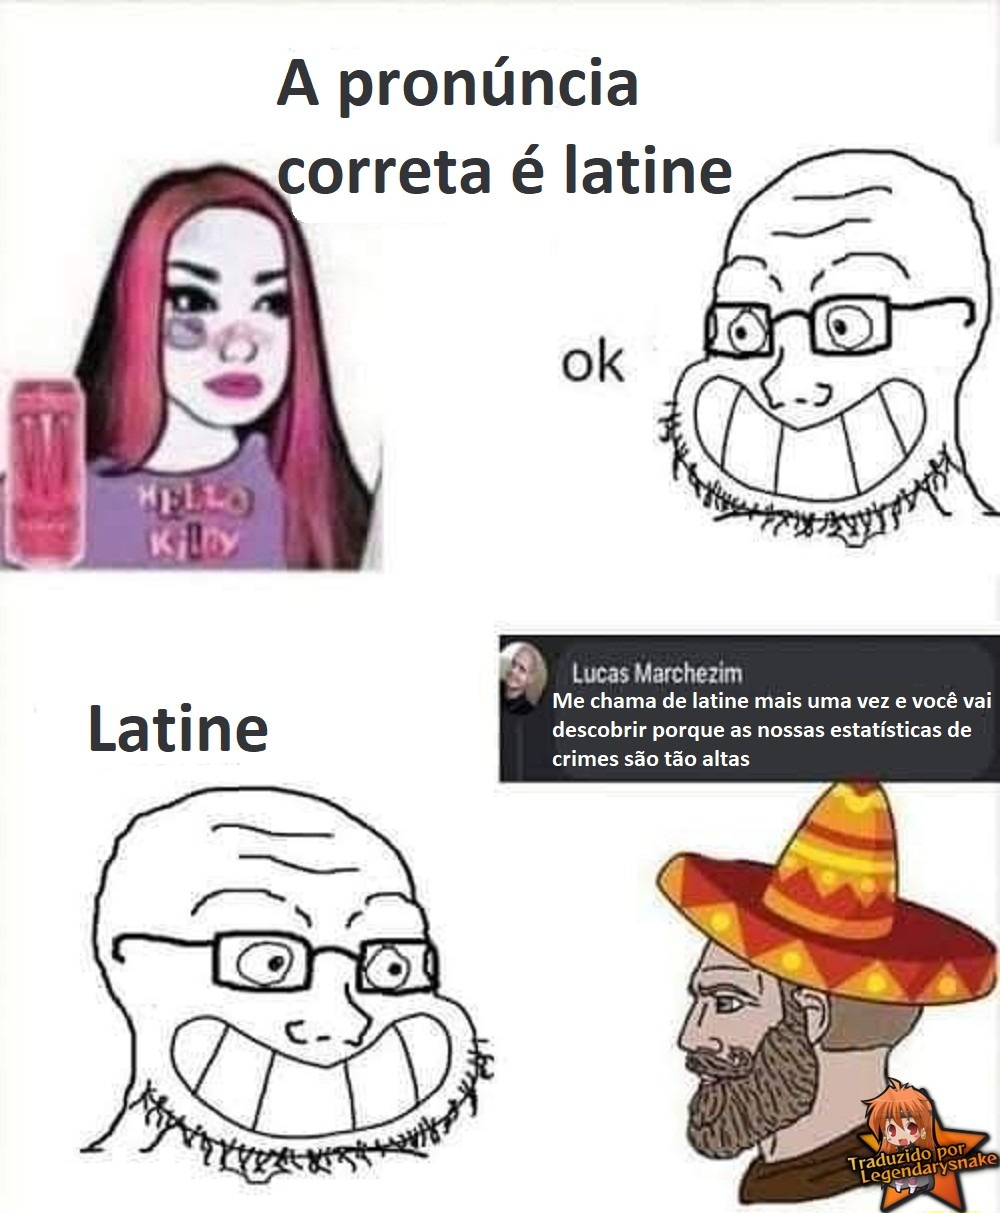 Latino, latina, latine, Karine, Karina, karinho - meme